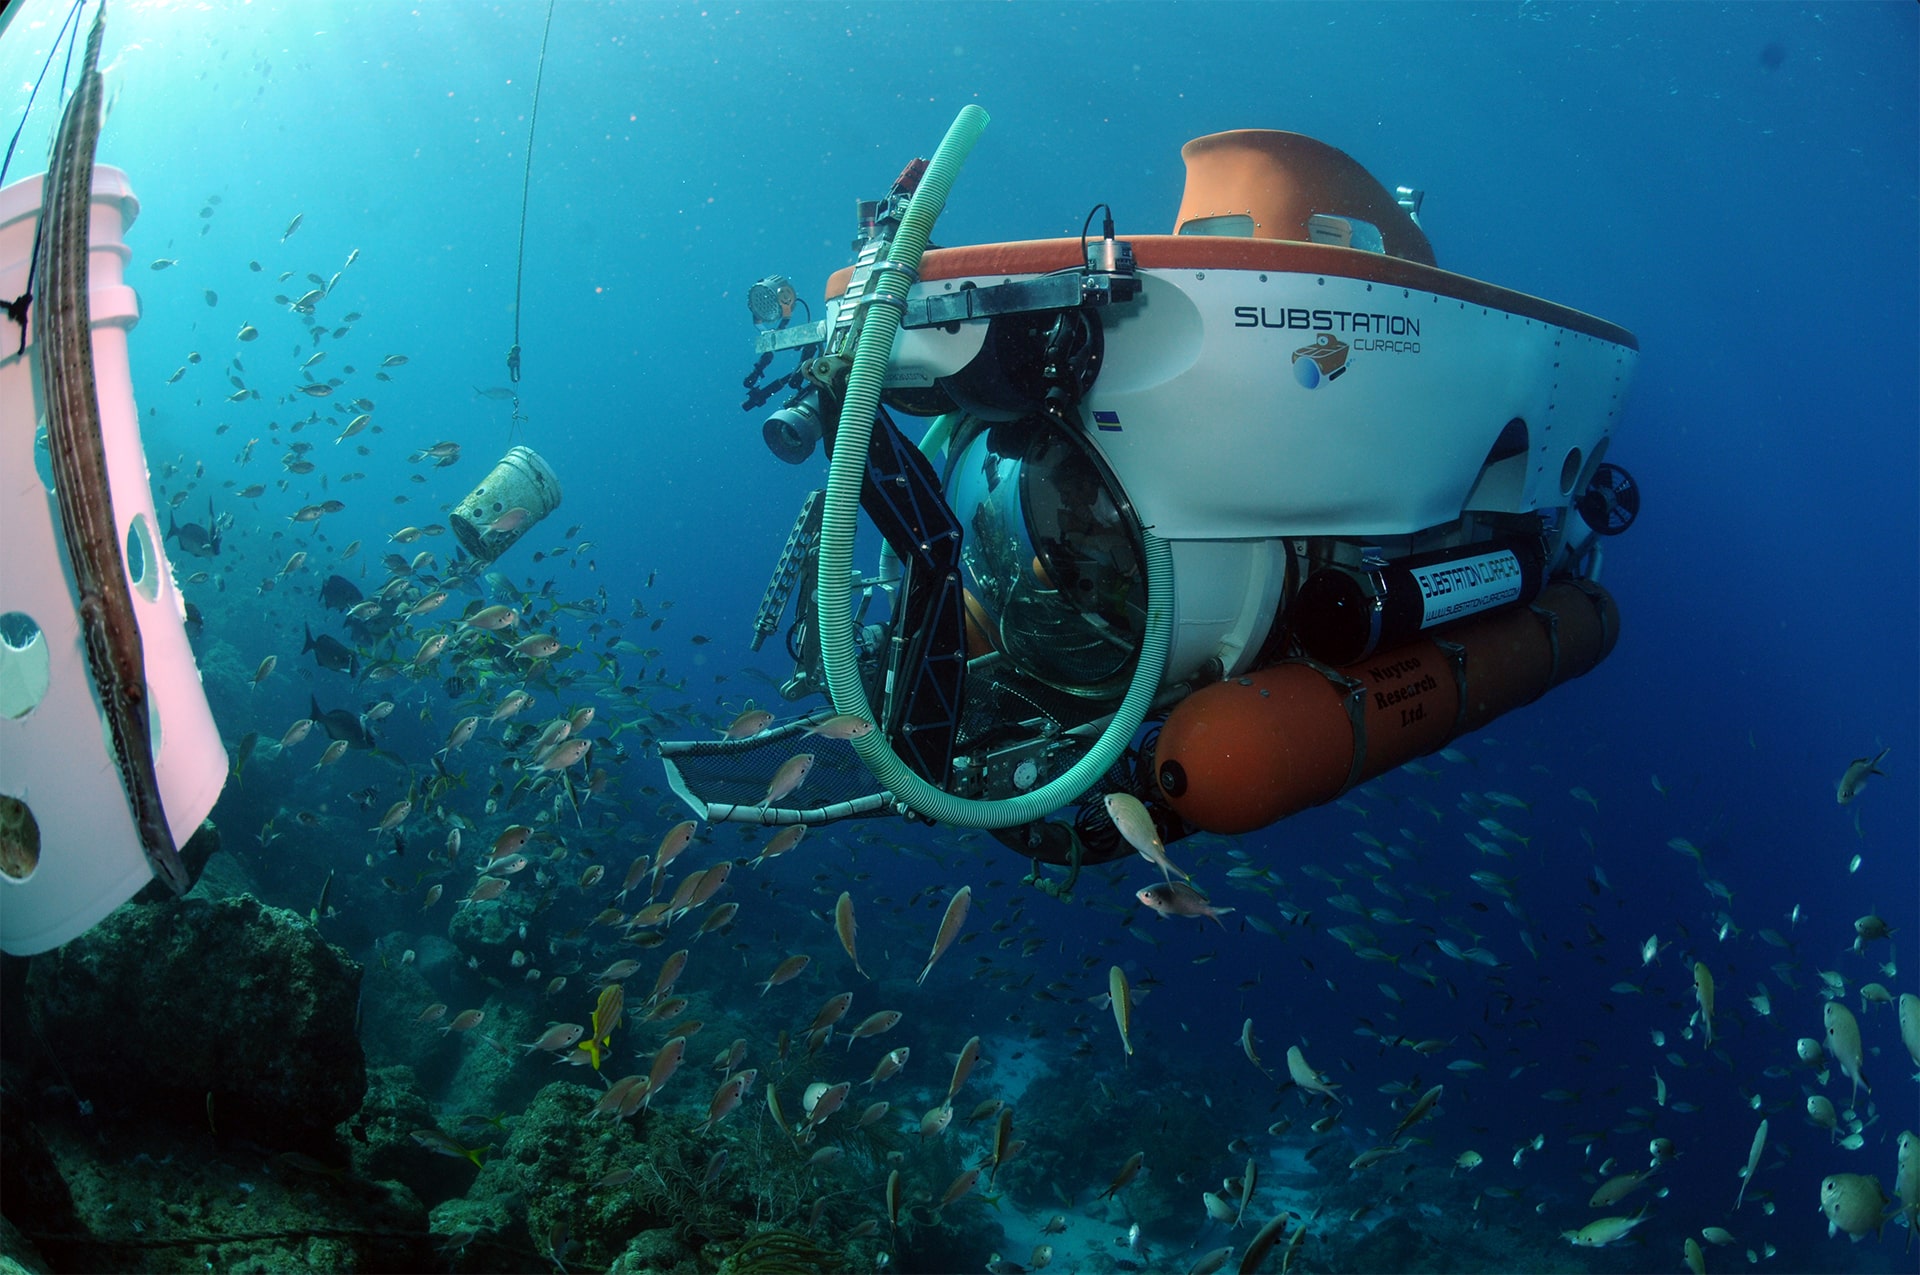 CuraSub lleva investigadores a estudiar de cerca el vasto ecosistema marino tropical, la investigación en instalación única.